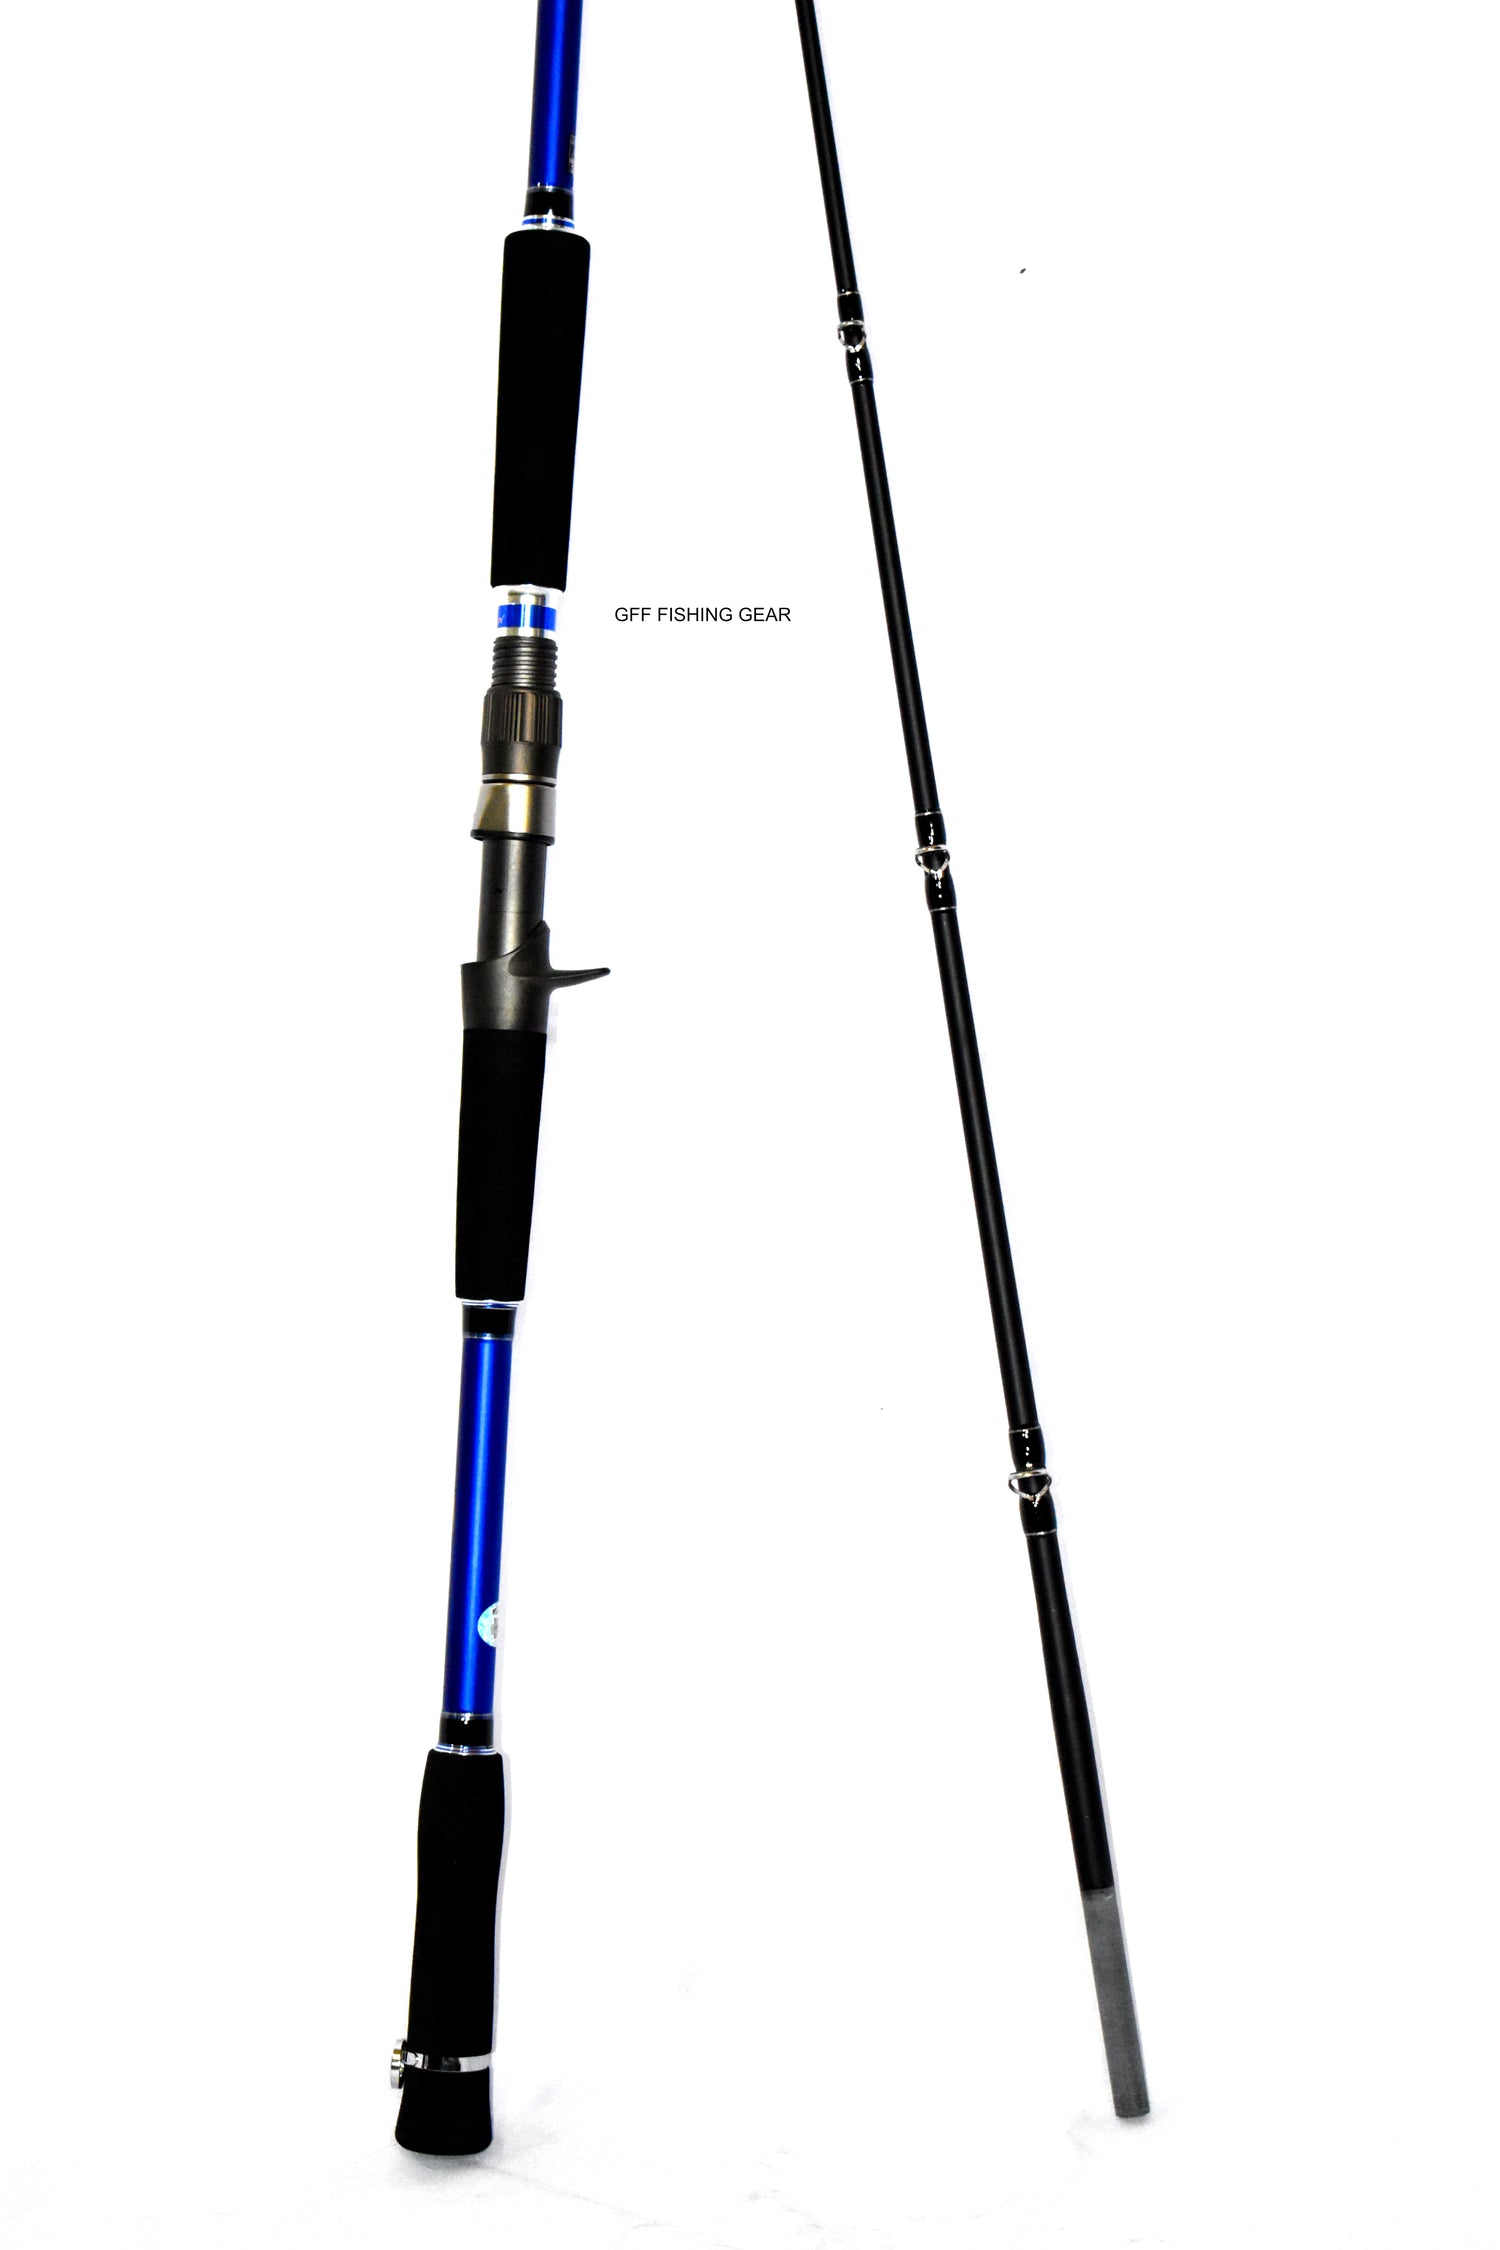 2.1M Jigging Two-Piece Jigging Rod 100-500g – GFF FISHING GEAR